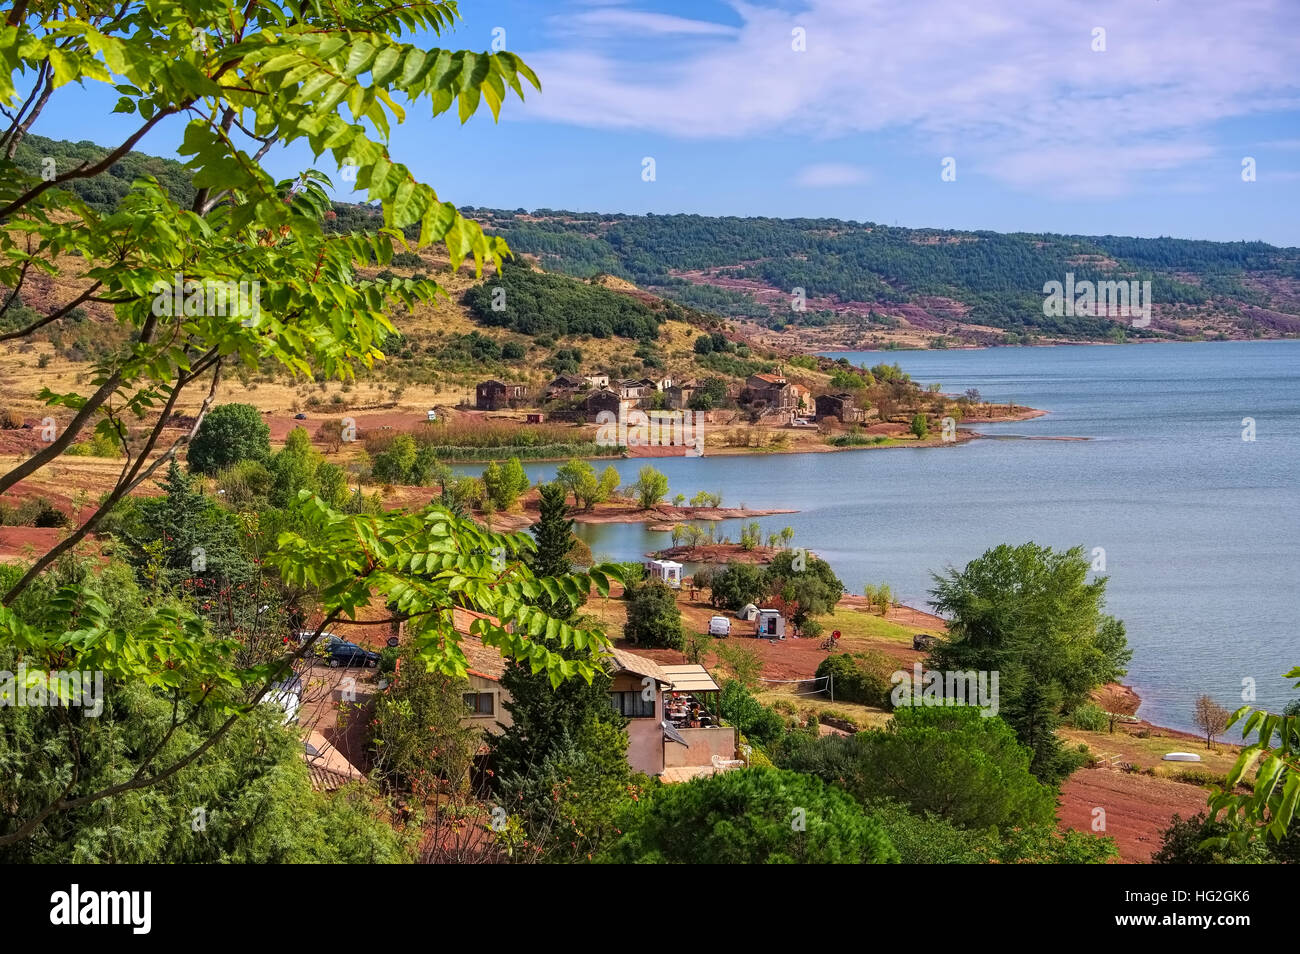 Lac du Salagou in Frankreich - Lac du Salagou in France, Languedoc-Roussillon Foto Stock